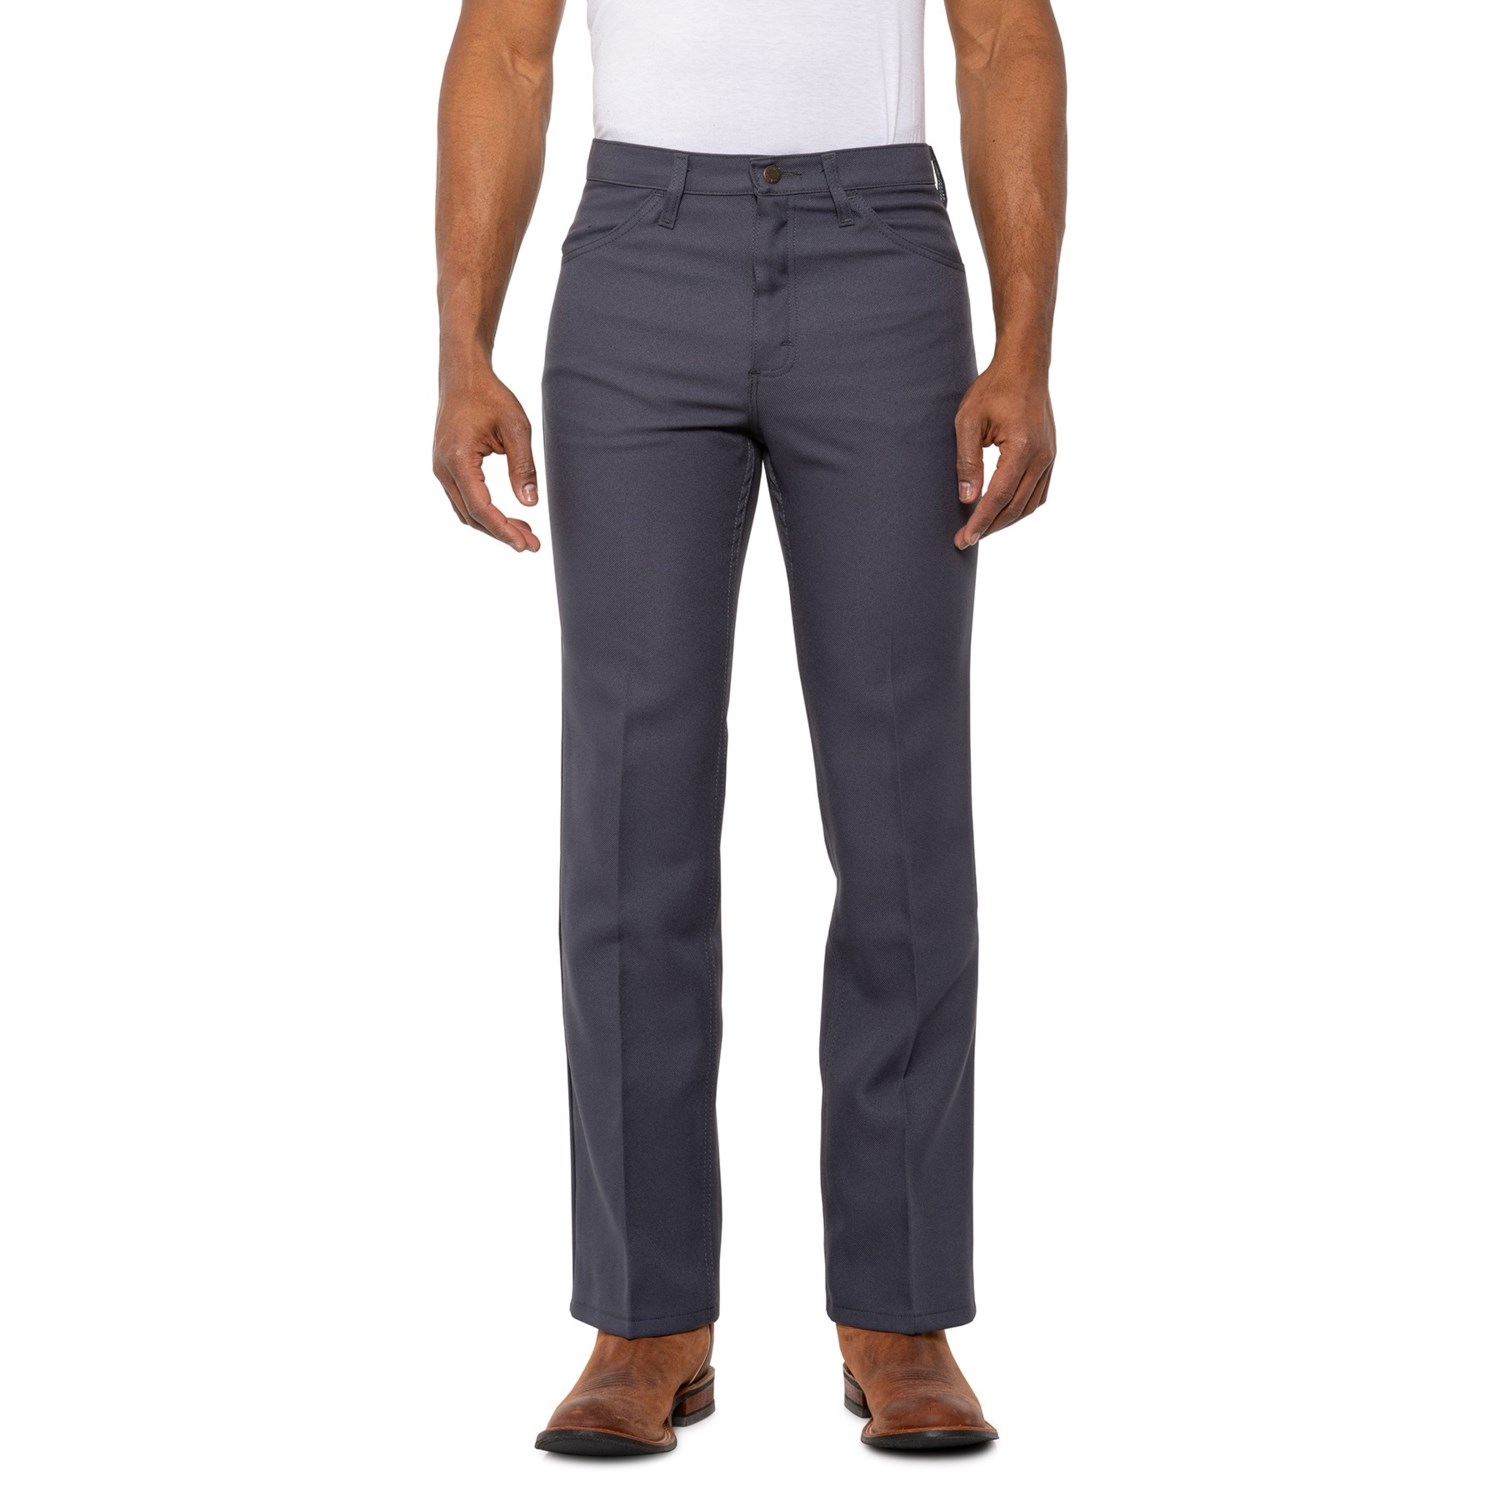 Wrangler Wrancher Dress Jeans (For Men) - Save 42%